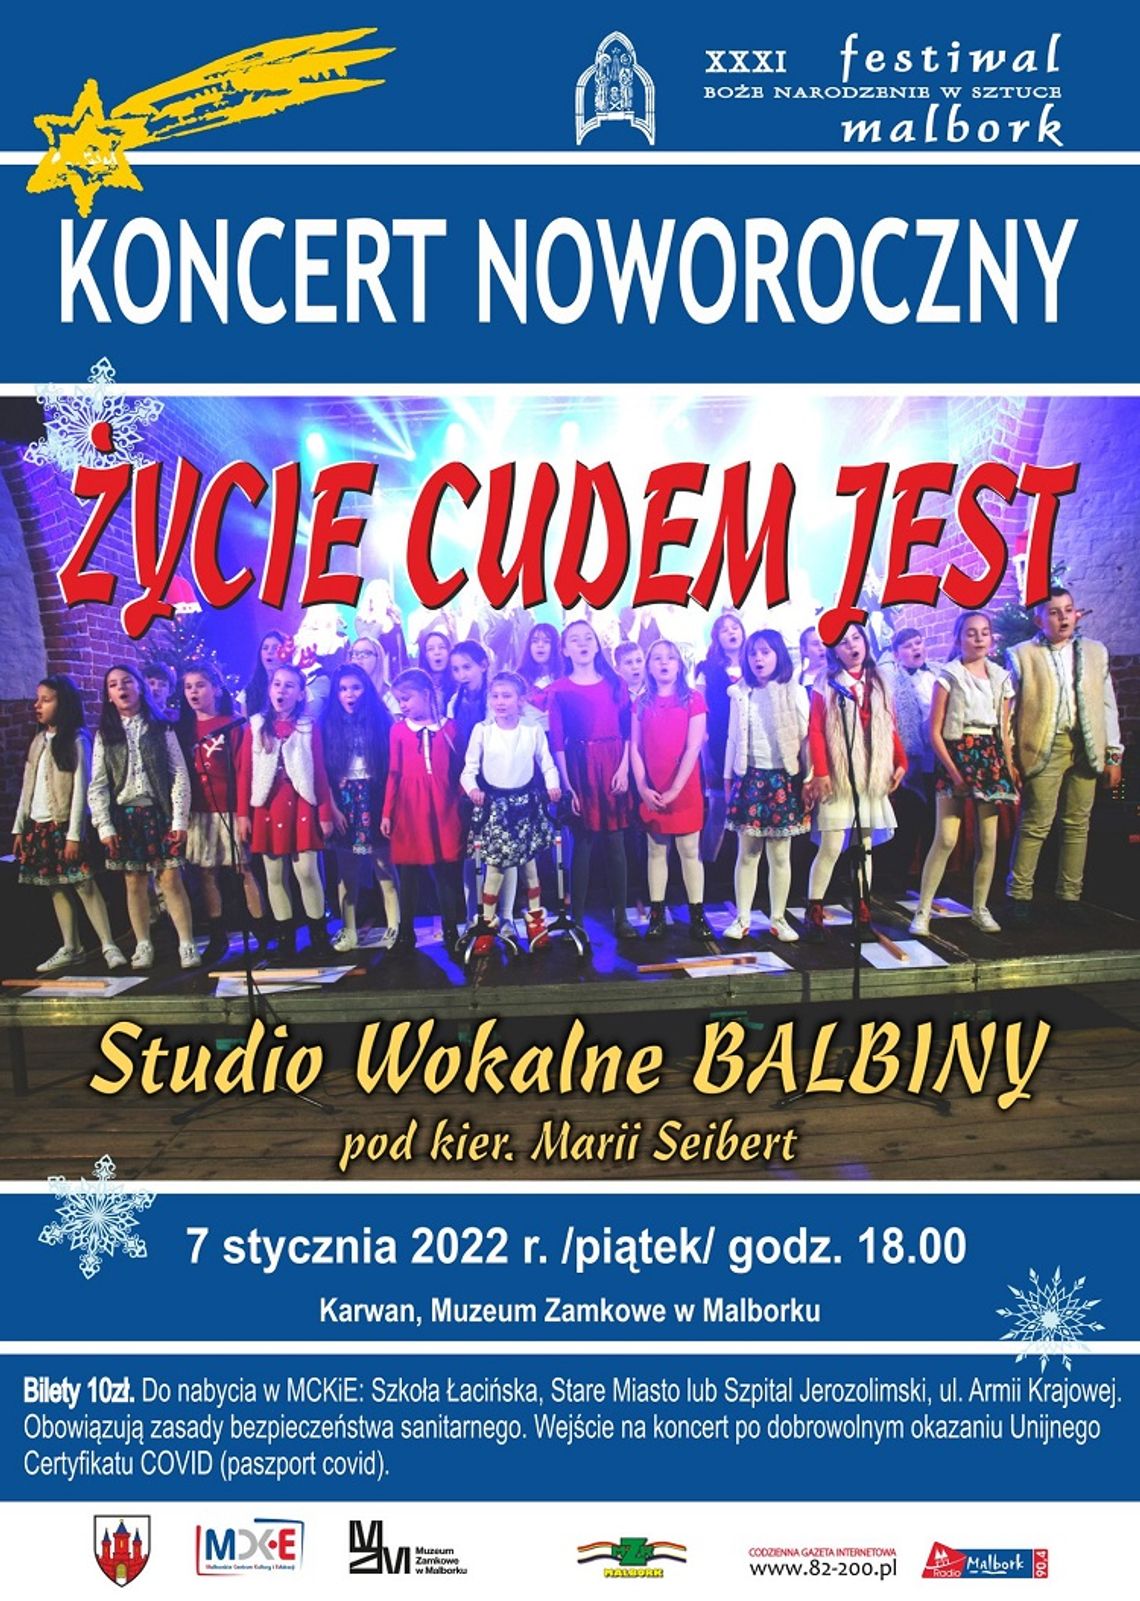 XXXI Festiwal Boże Narodzenie w Sztuce. Koncert Noworoczny" Życie Cudem jest" w Malborku.